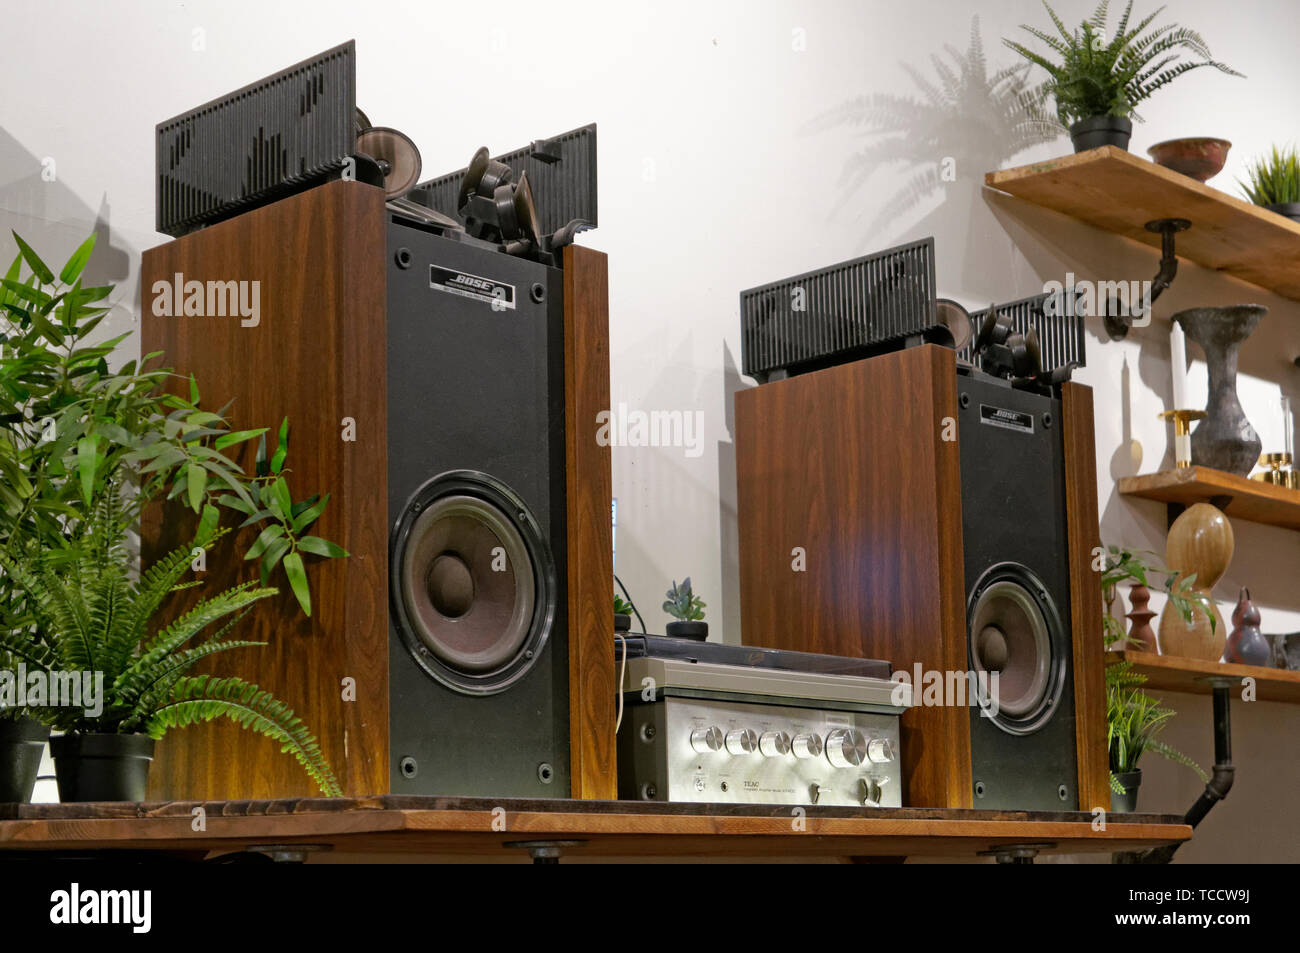 Vintage Stereoanlage mit Plattenspieler, Verstärker und Lautsprecher,  sitzend auf einem Regal Stockfotografie - Alamy